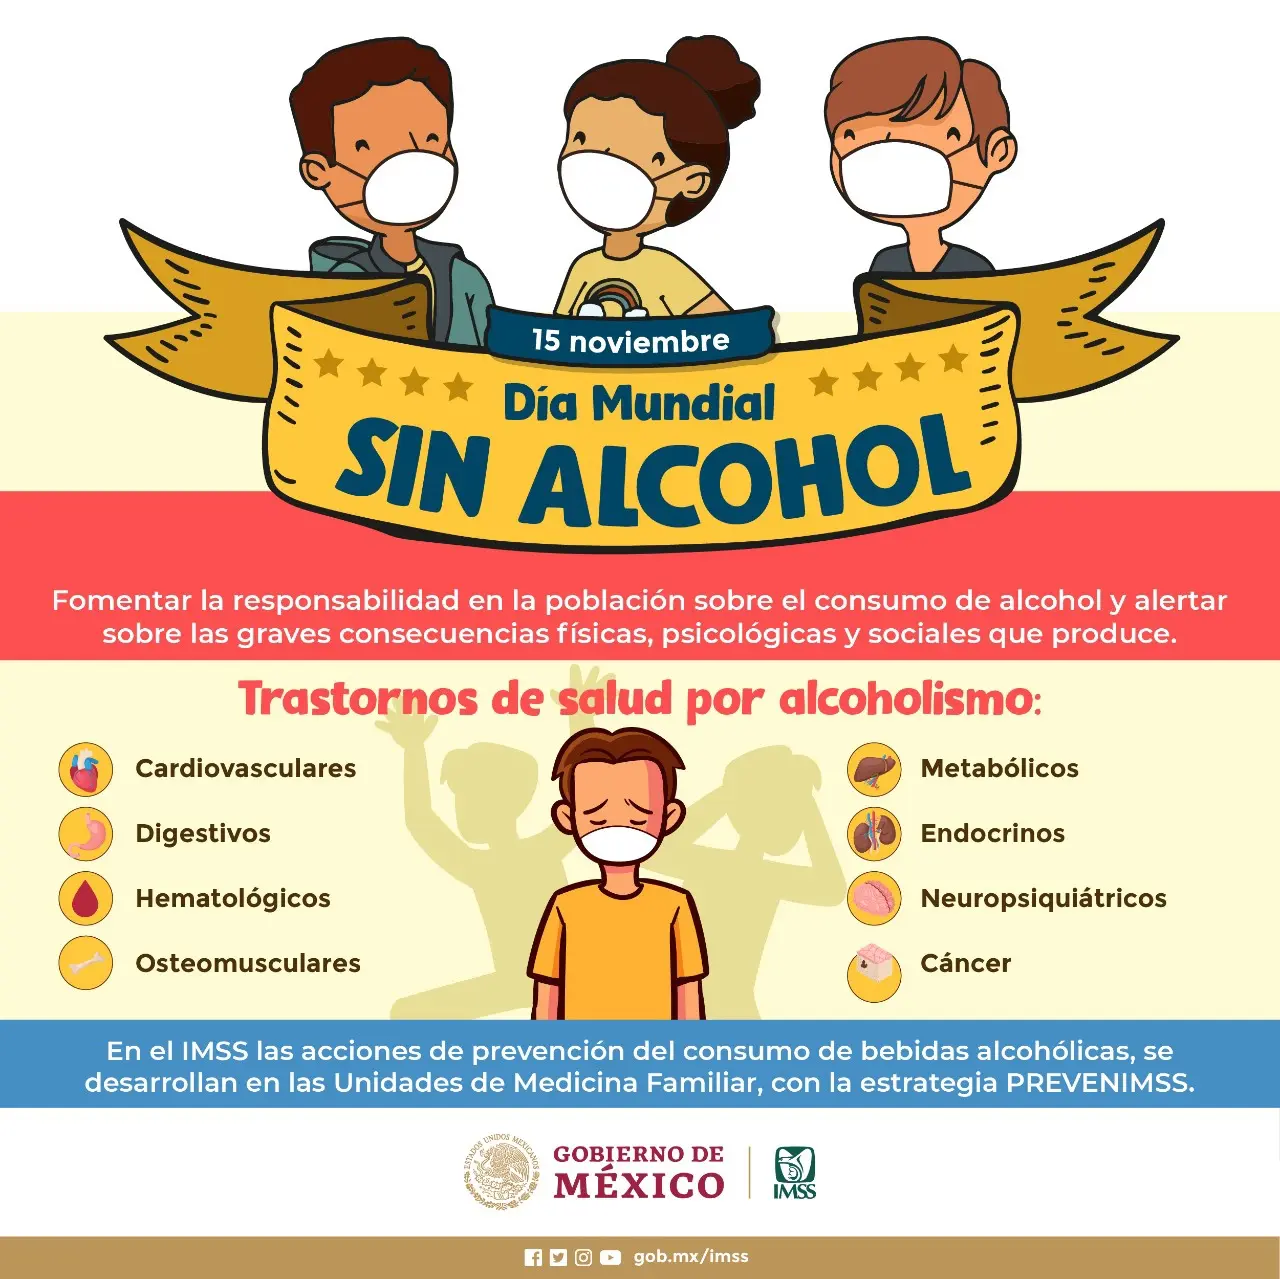 consecuencias fisicas psicologicas y sociales del alcoholismo - Cuáles son las consecuencias sociales del consumo de alcohol